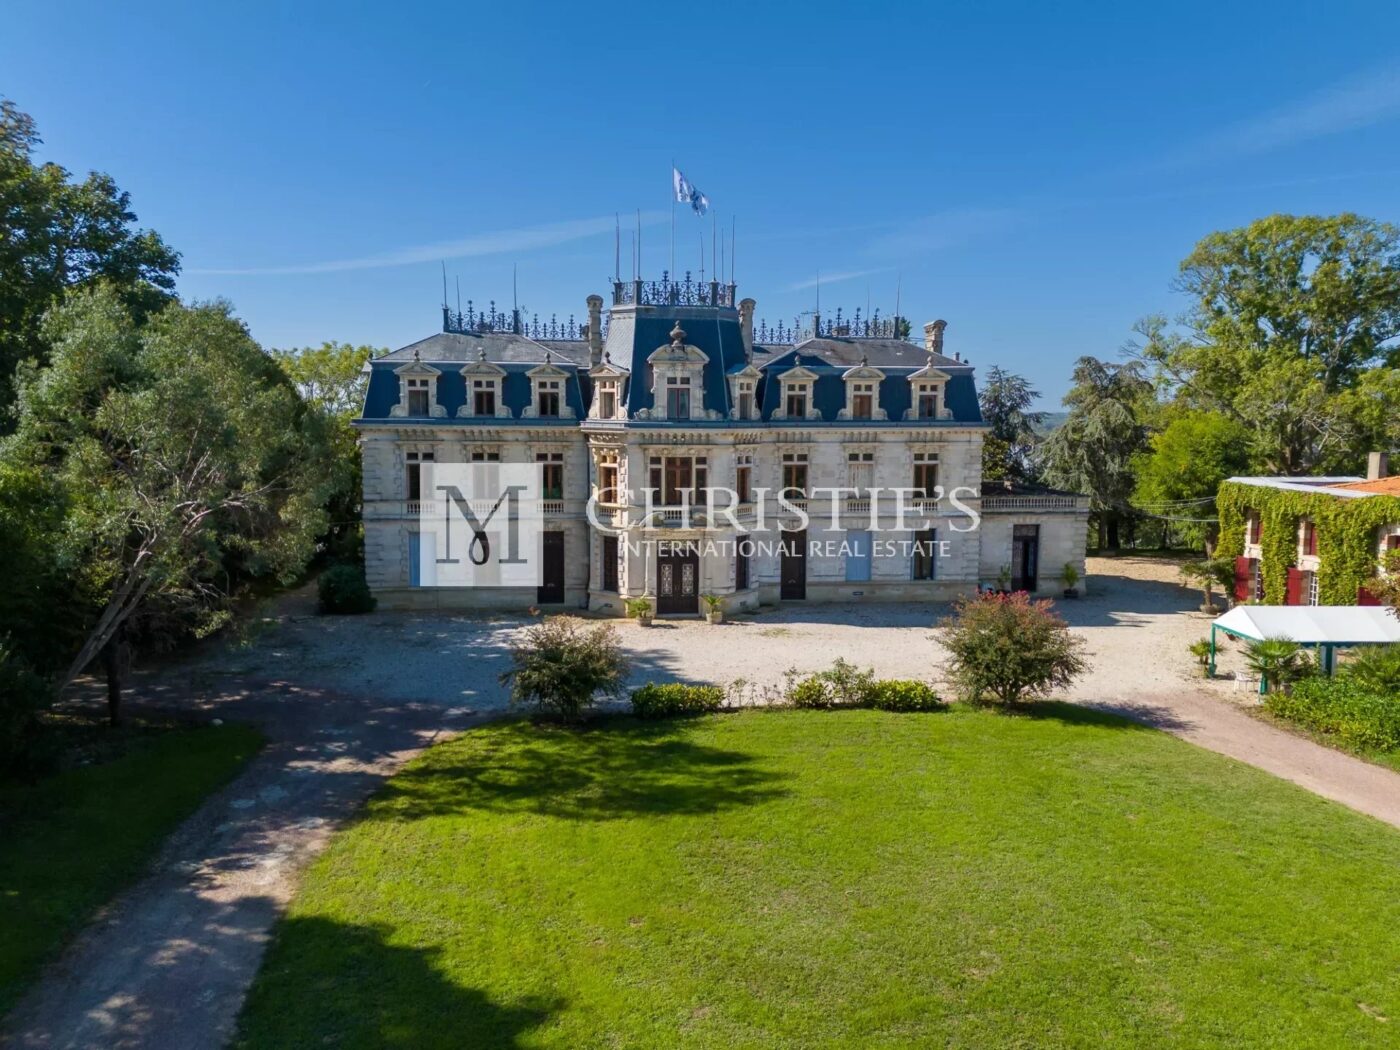 A vendre beau domaine viticole avec Château du XIXème siècle surplombant la rivière - Idéal pour un projet d'œnotourisme